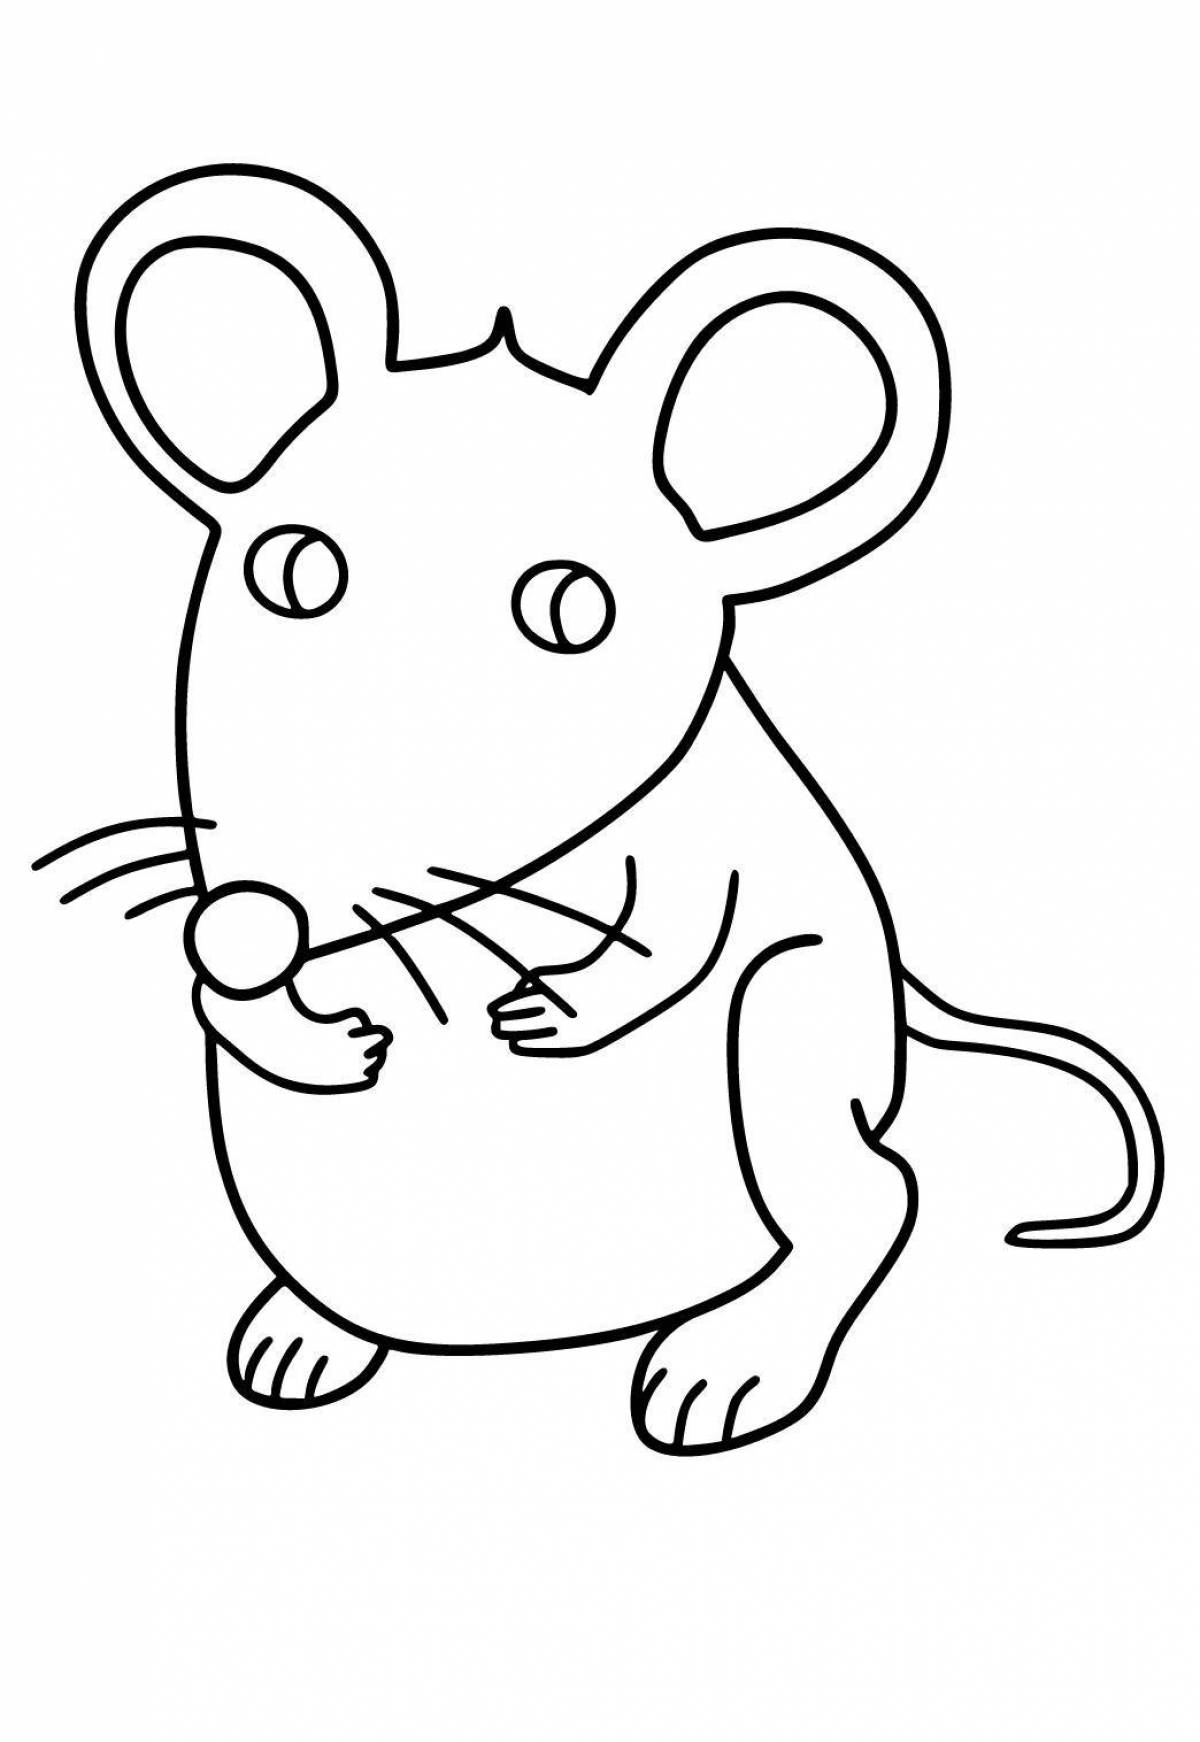 Увлекательная раскраска мыши для детей